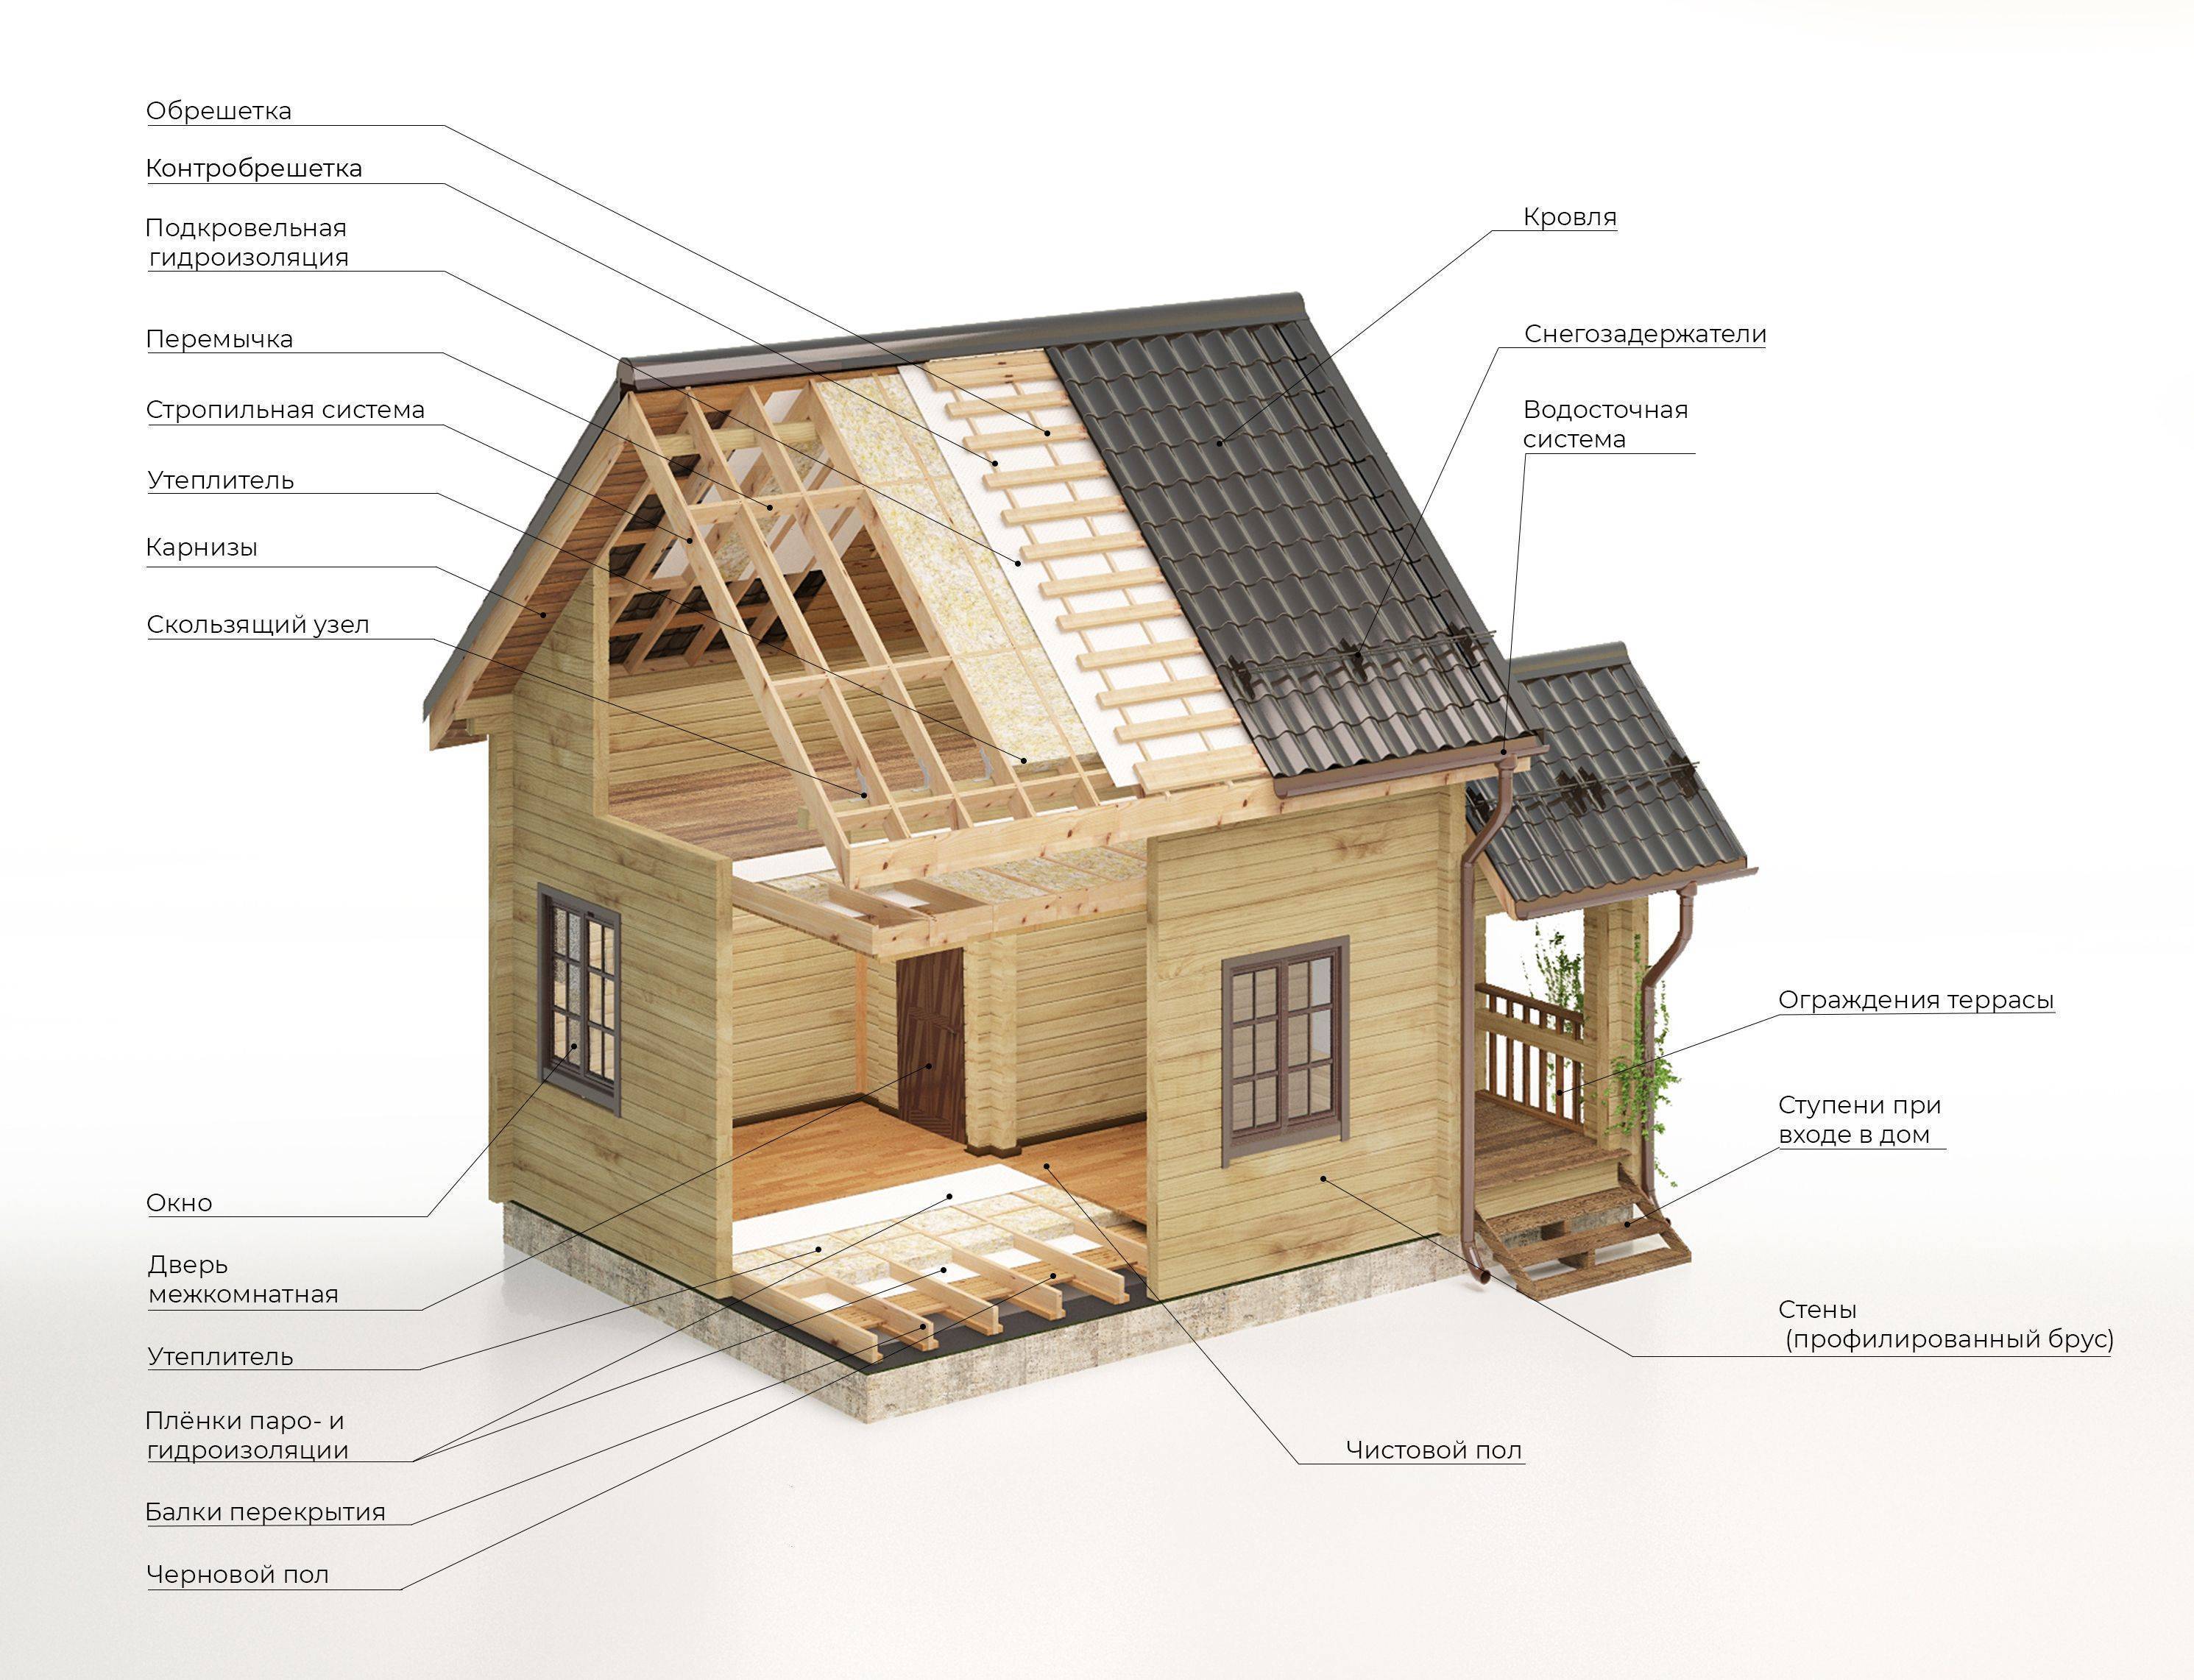 Варианты отопления деревянного дома из бруса. паровое, печное, электрическое и другие методы обогрева дома из дерева